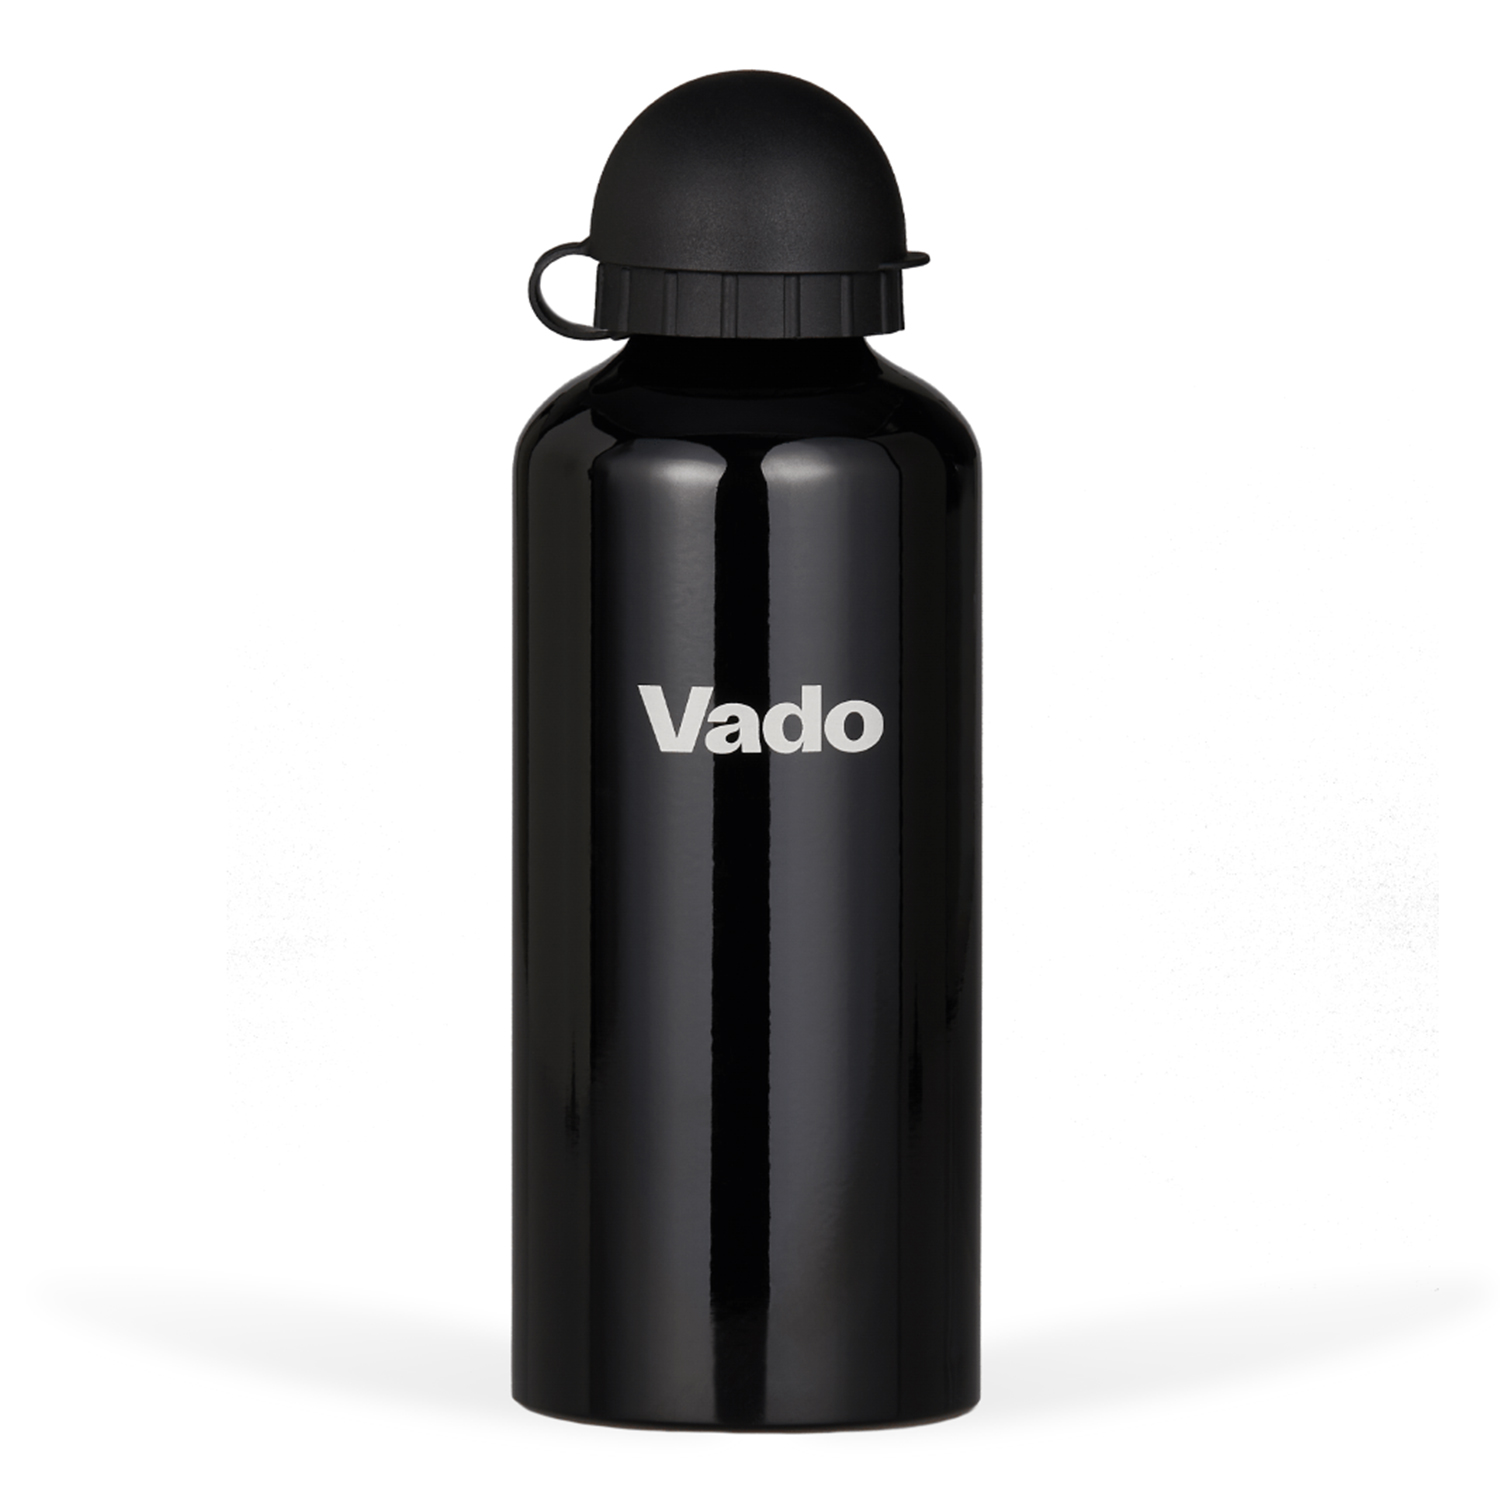 VADO SAFE-LID BOTTLE Vado